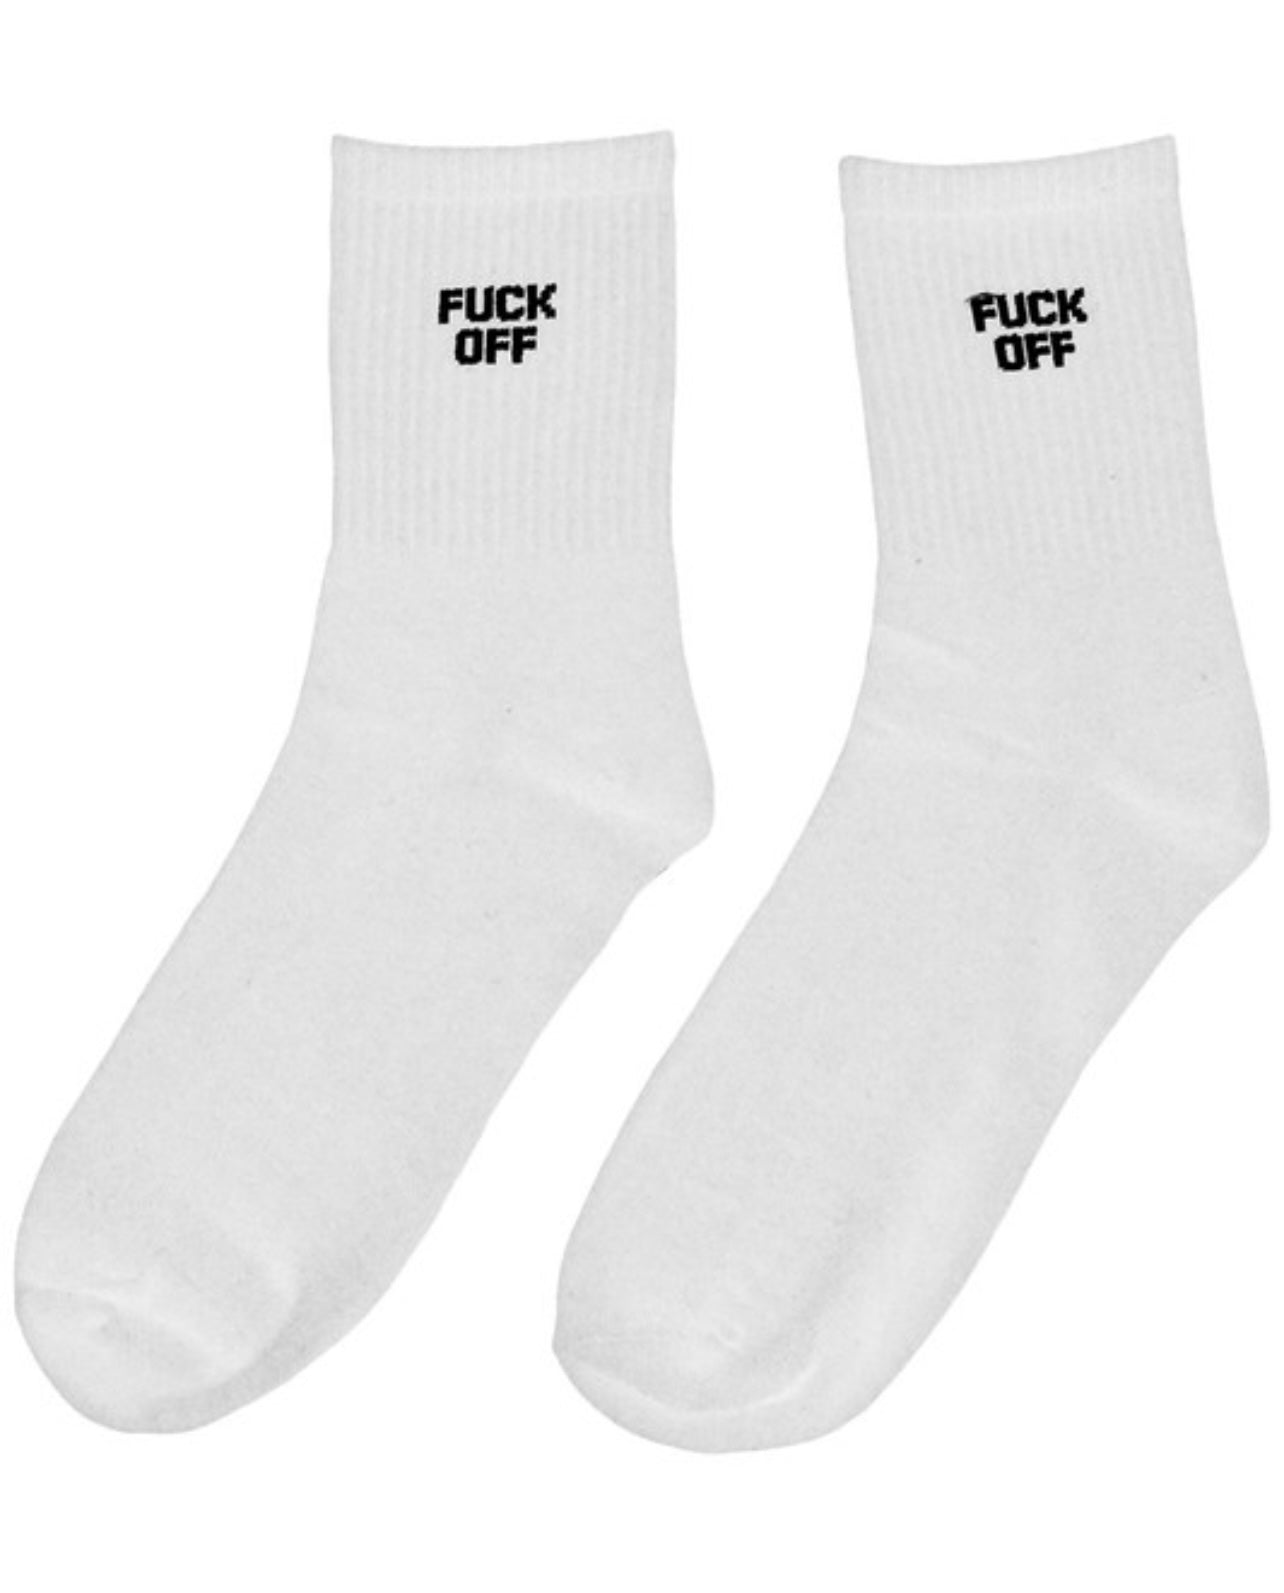 white socks, fuck off ,